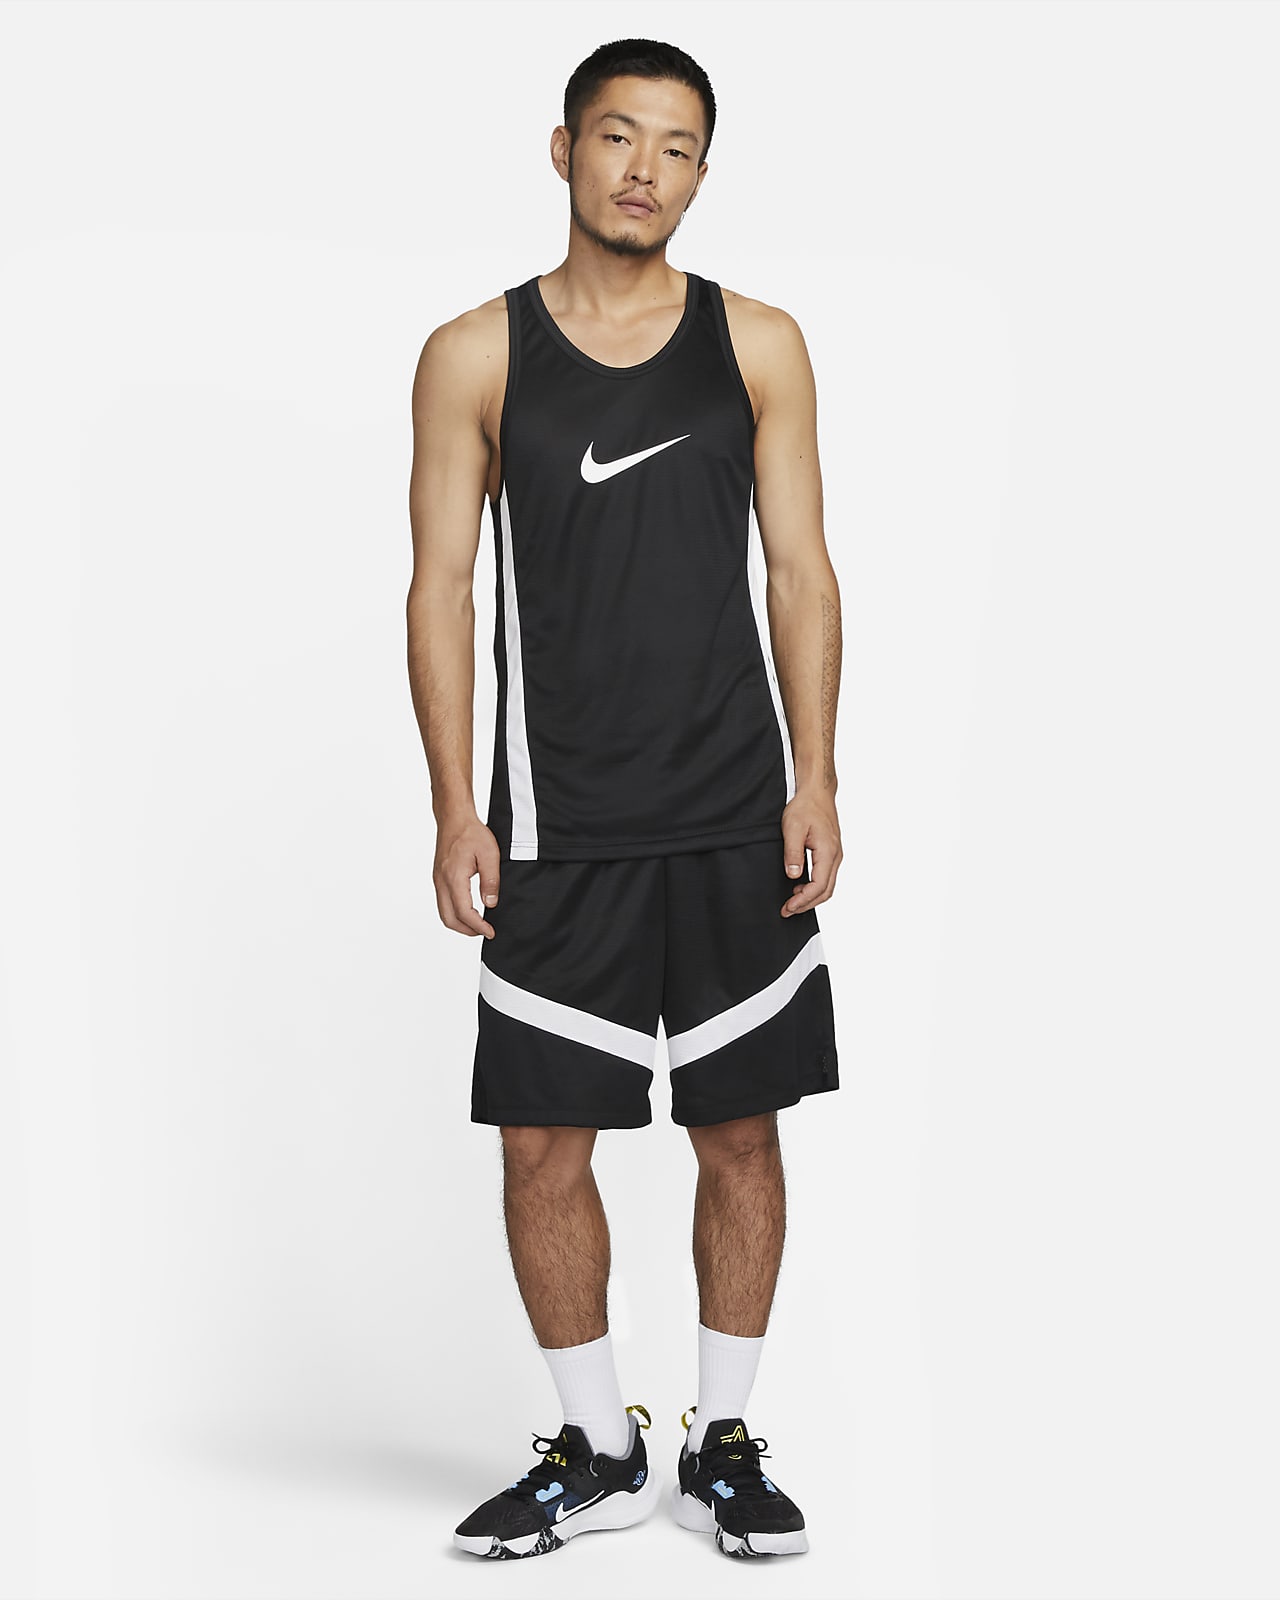 Polering Wings Hørehæmmet Nike Dri-FIT Icon Men's Basketball Jersey. Nike ID